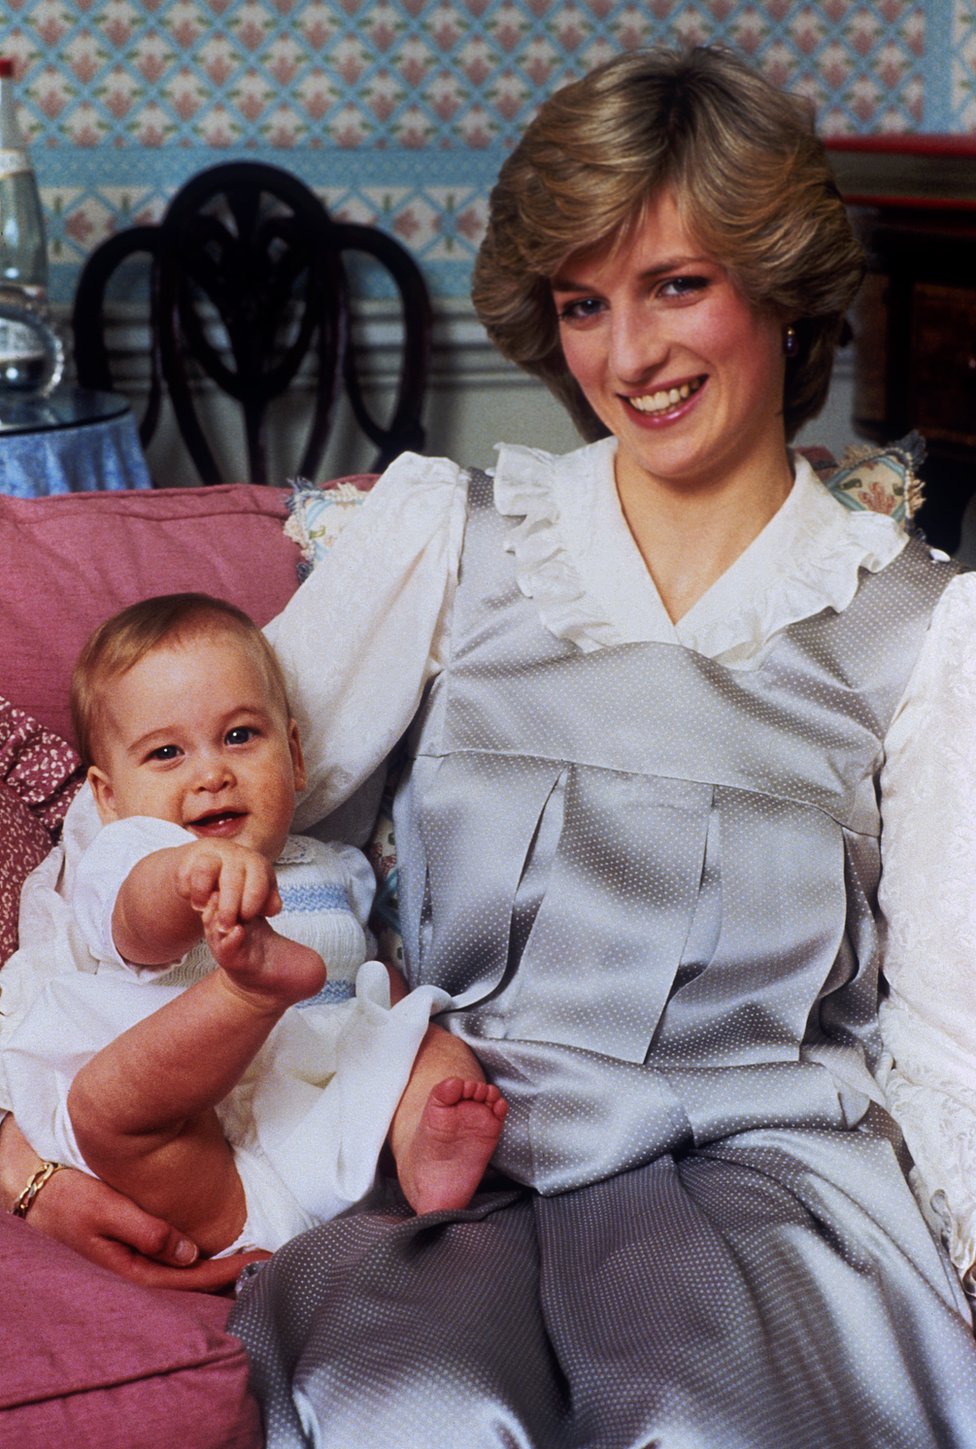 La princesa Diana con el príncipe William de bebé